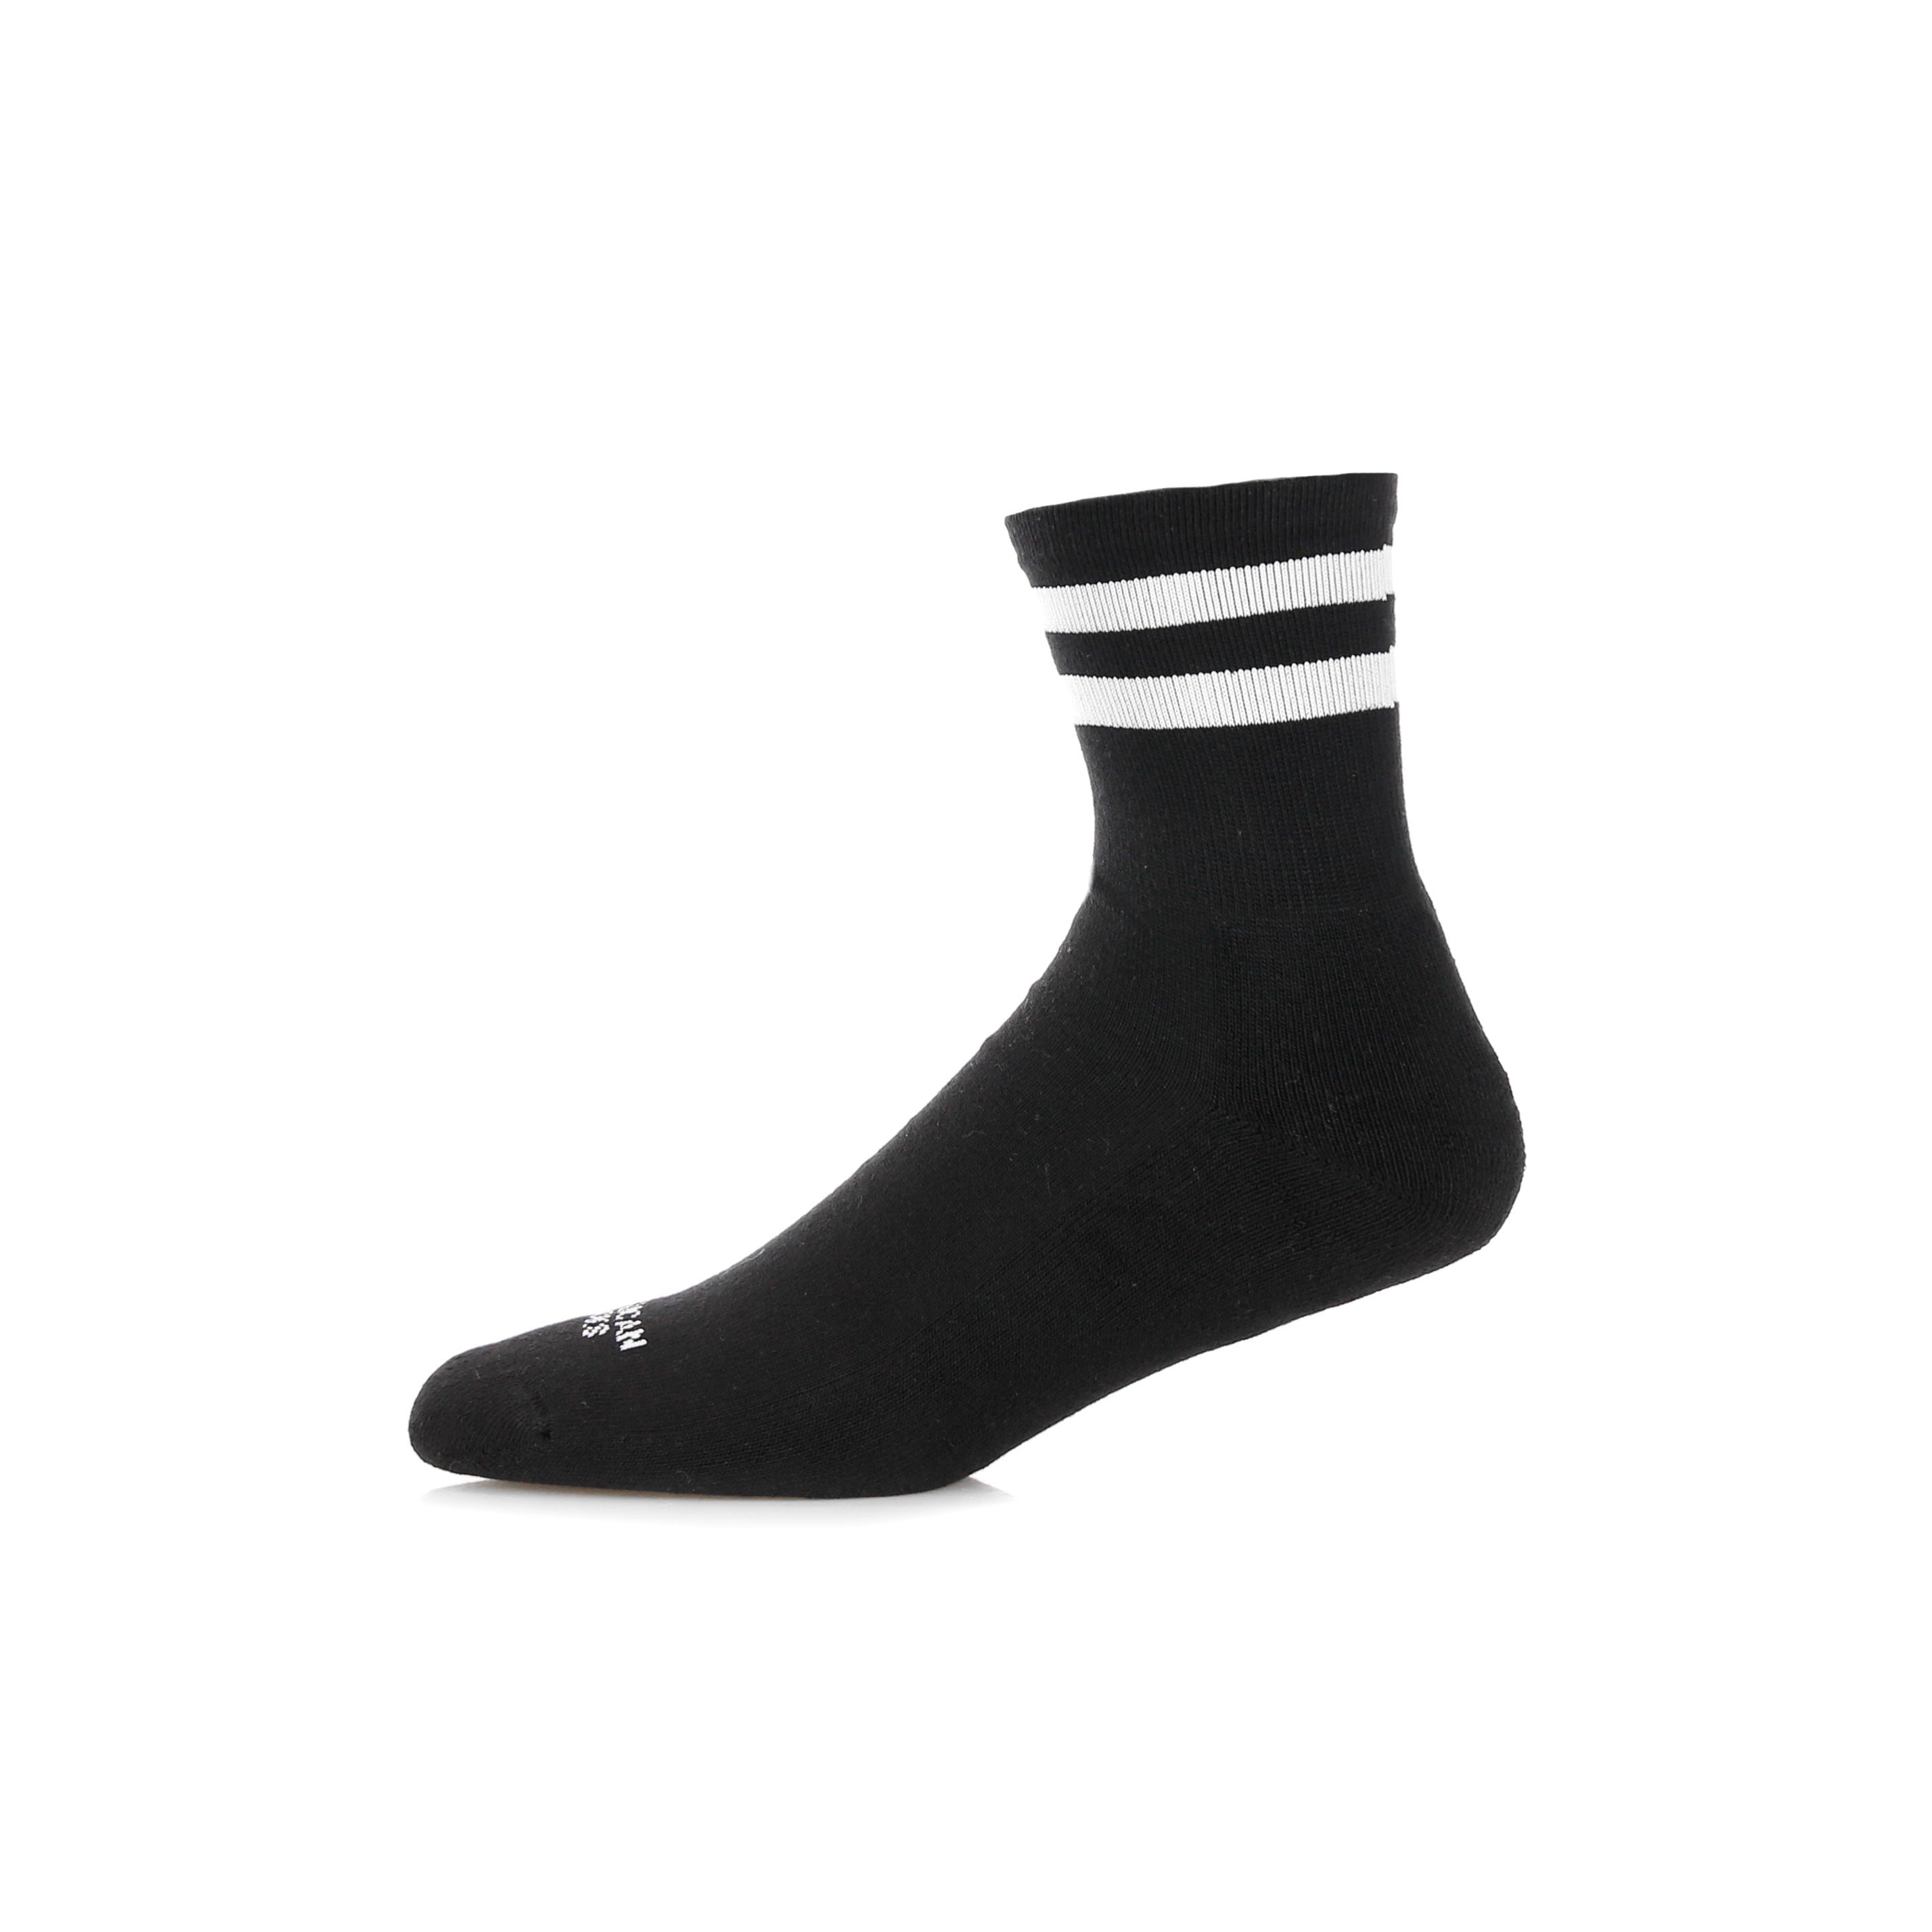 American Socks, Calza Bassa Uomo Back In Black, Black